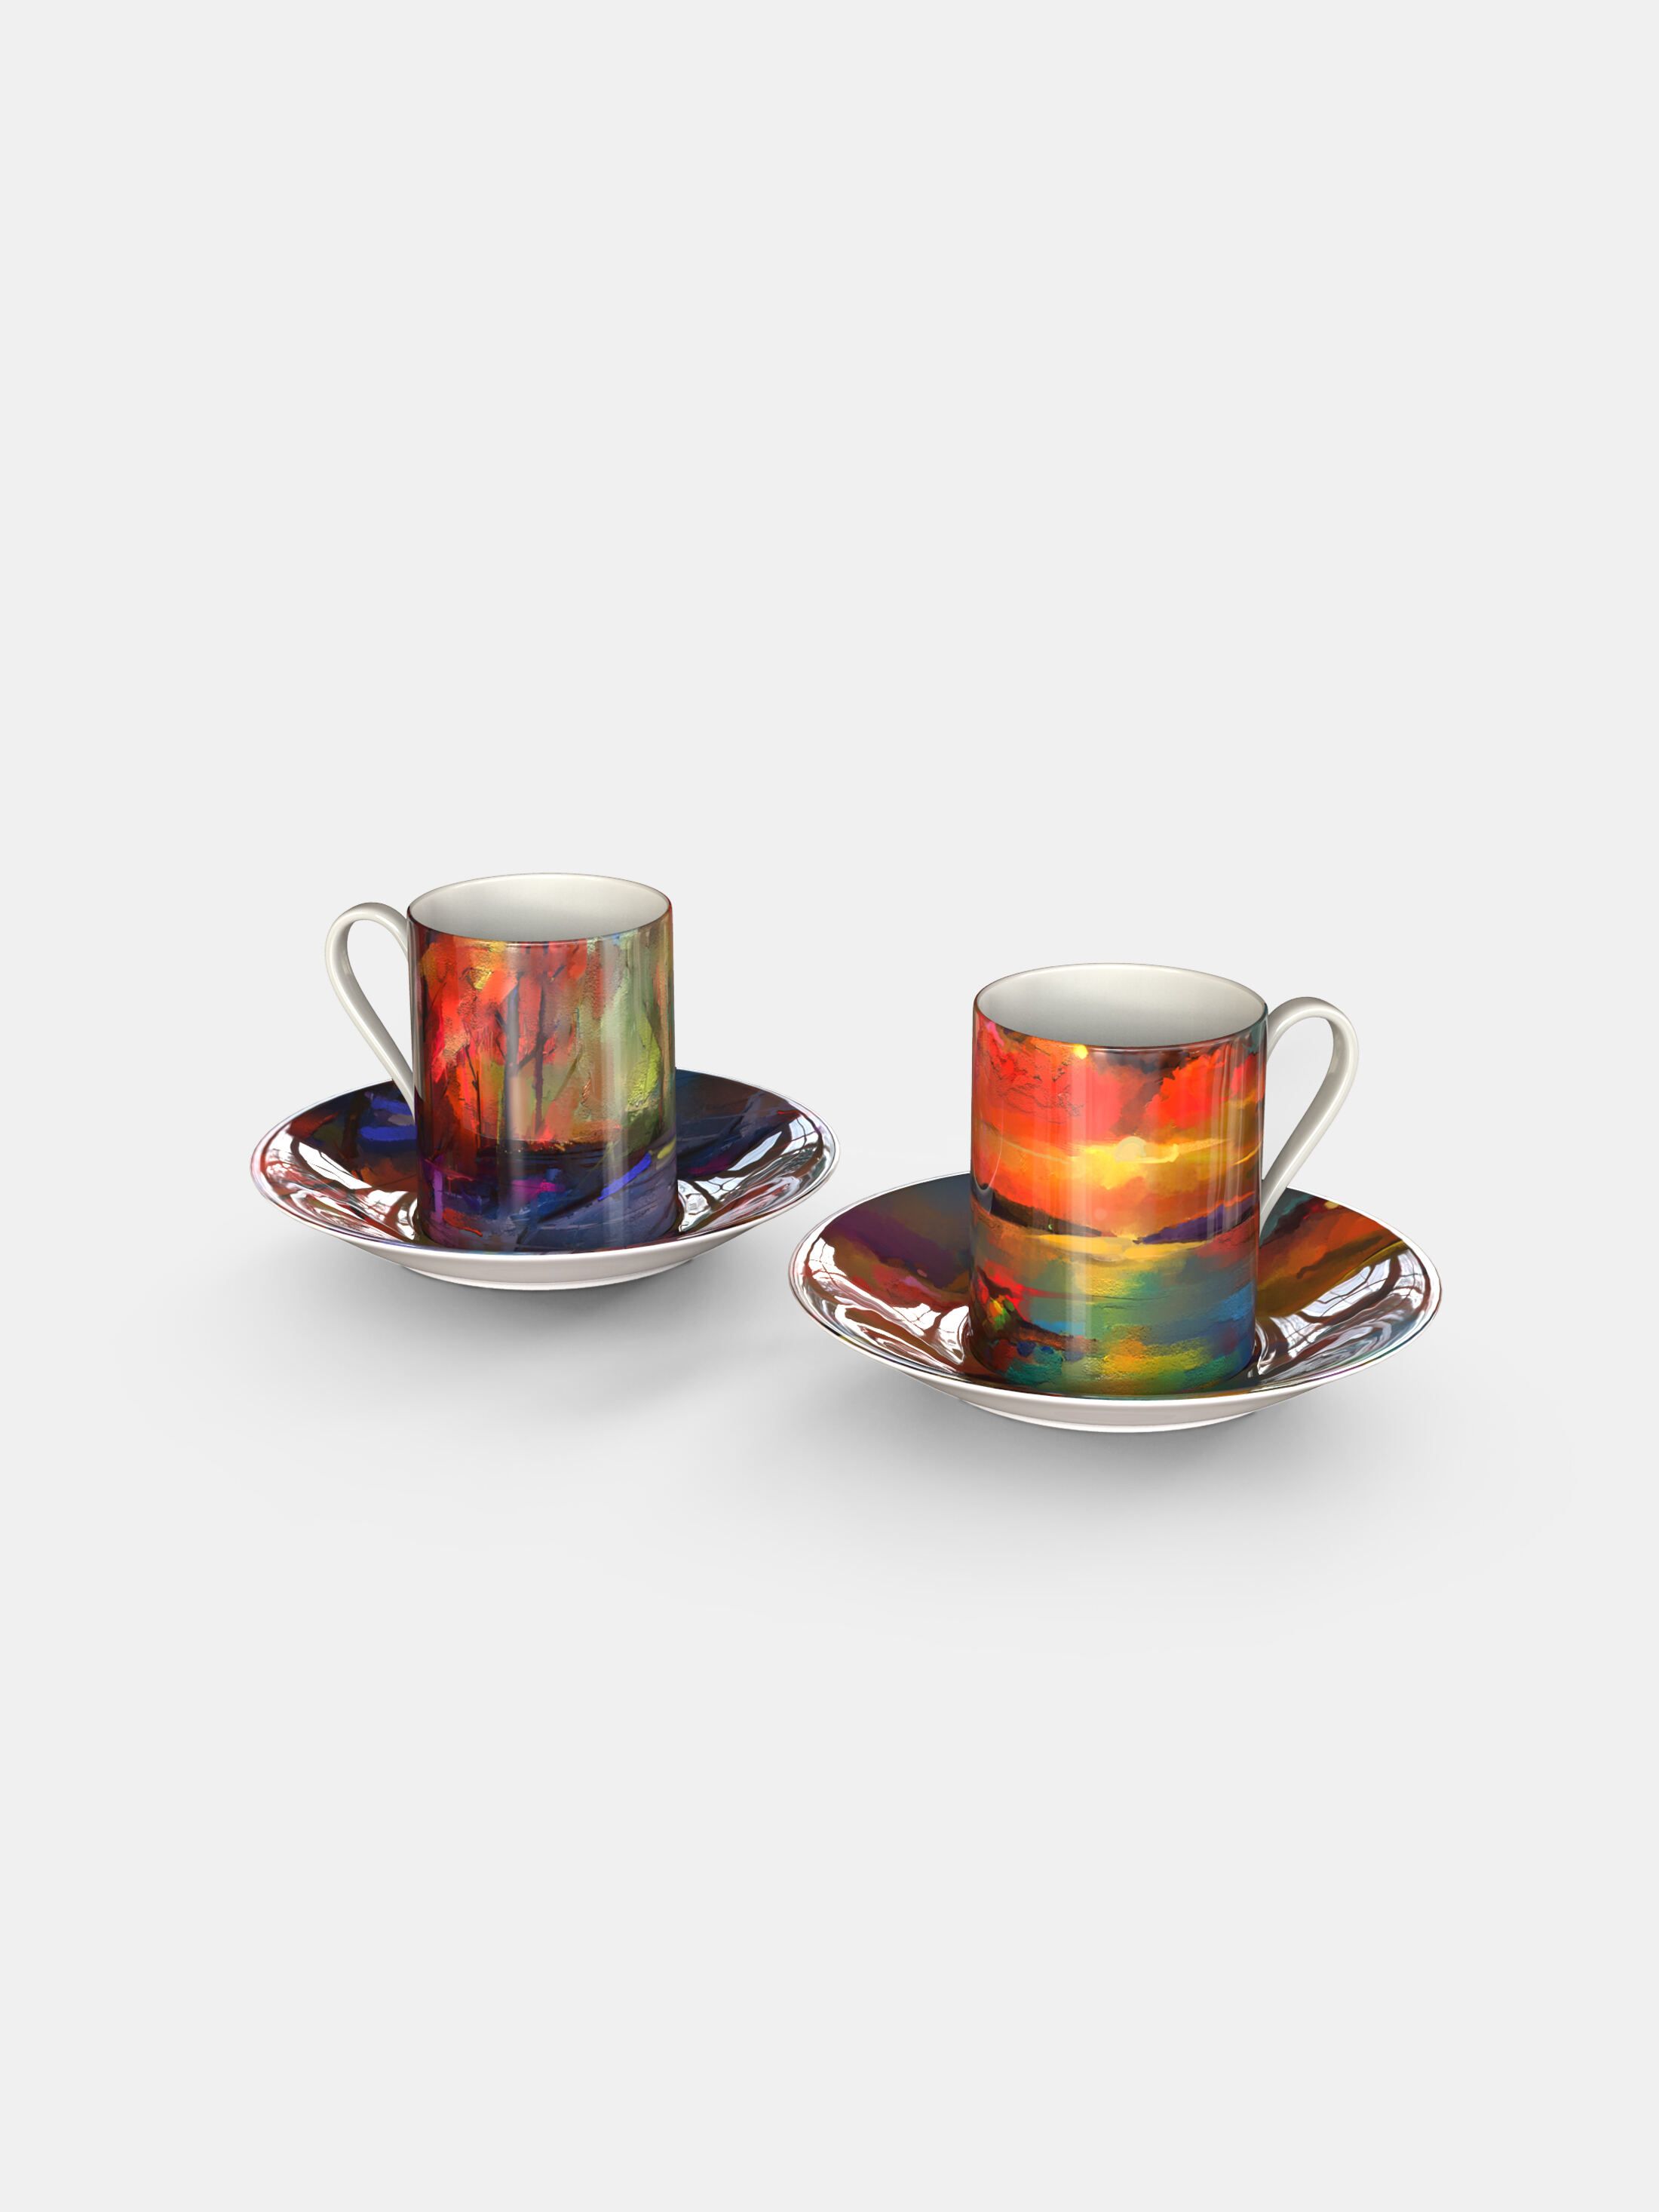 Custom Espresso Cup. Printed Espresso Cups. Handmade.